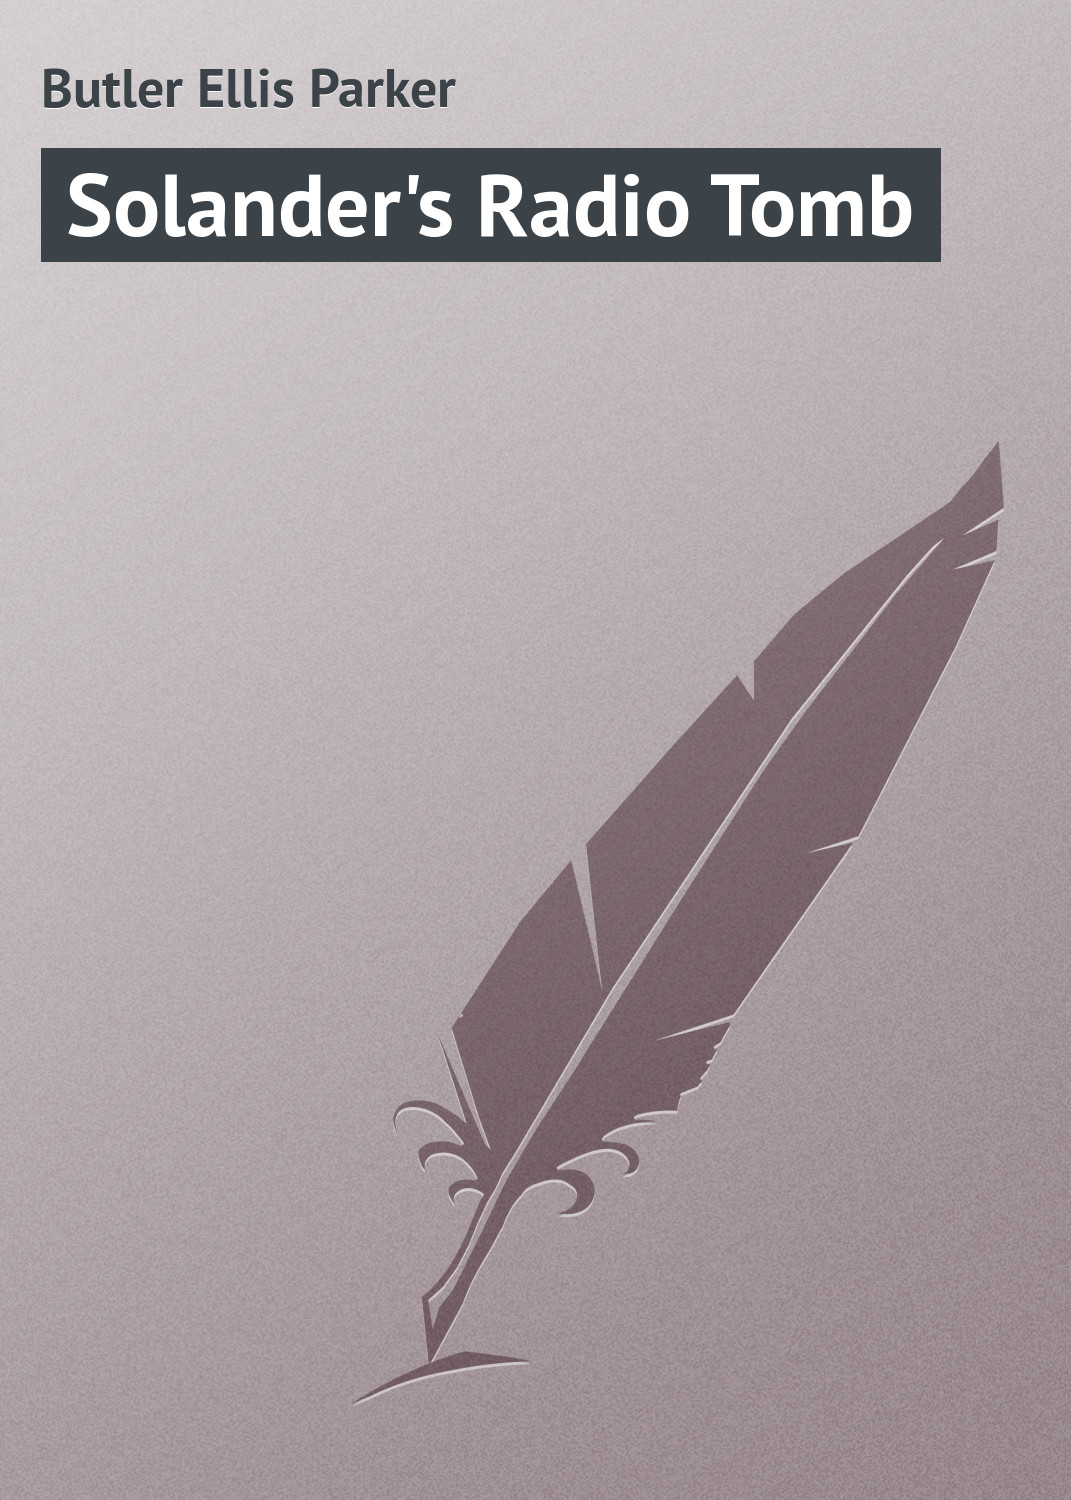 Книга Solander's Radio Tomb из серии , созданная Ellis Butler, может относится к жанру Иностранные языки, Зарубежная классика. Стоимость электронной книги Solander's Radio Tomb с идентификатором 23167915 составляет 5.99 руб.